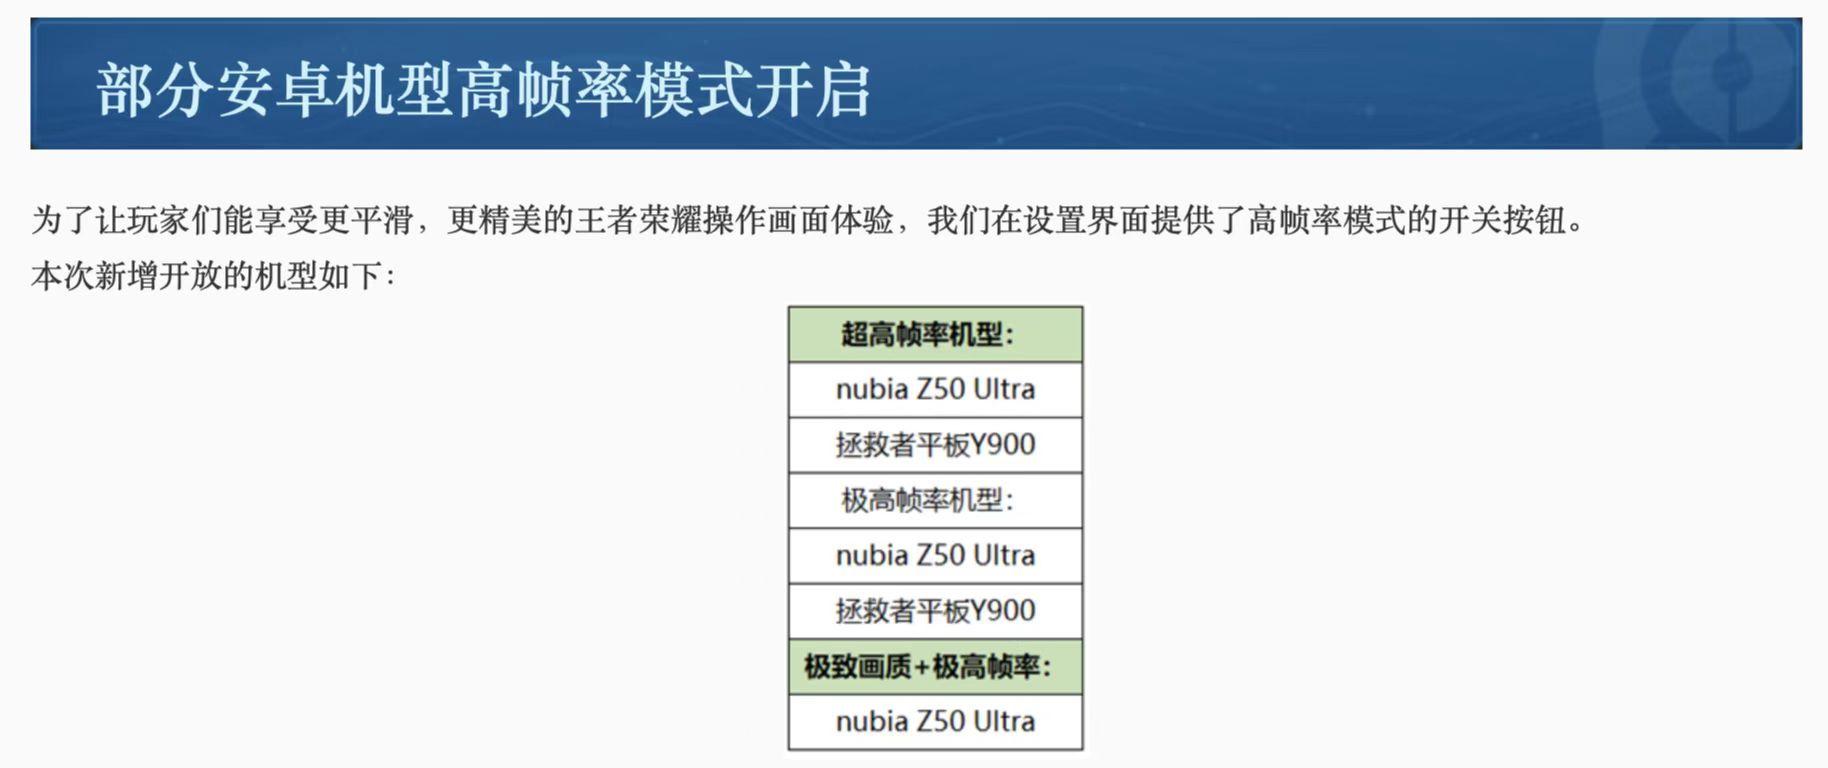 王者荣耀今天的更新公告把努比亚屏下新机Z50 Ultra曝光可，估计新机在3月初